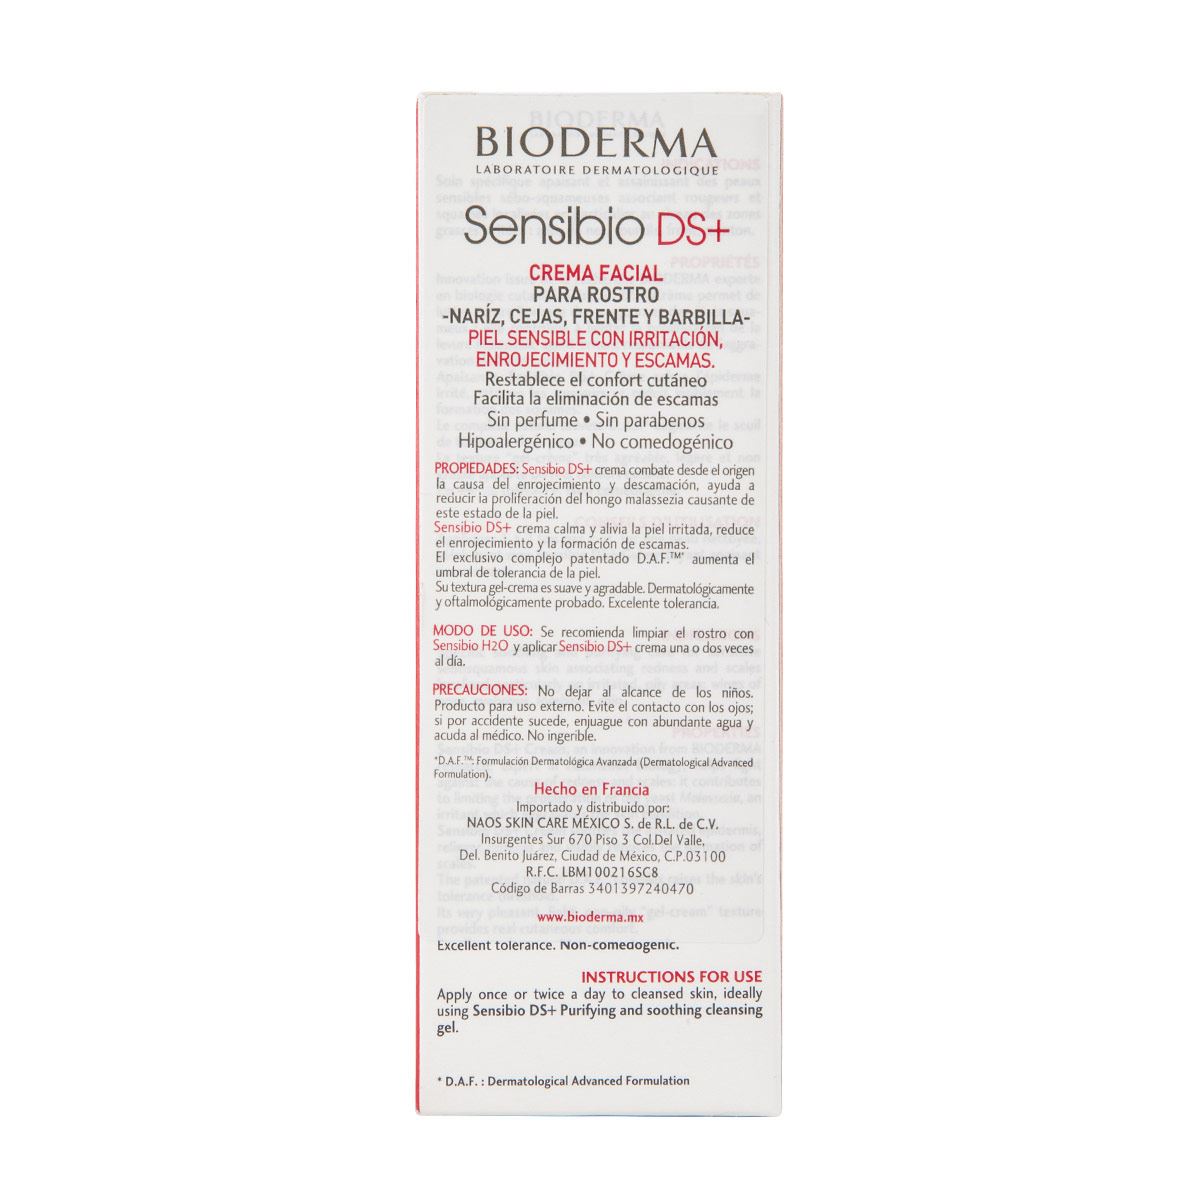 Bioderma Sensibio DS + Crema Purificante para Pieles Sensibles con Rojeces y Escamas, 40 ml